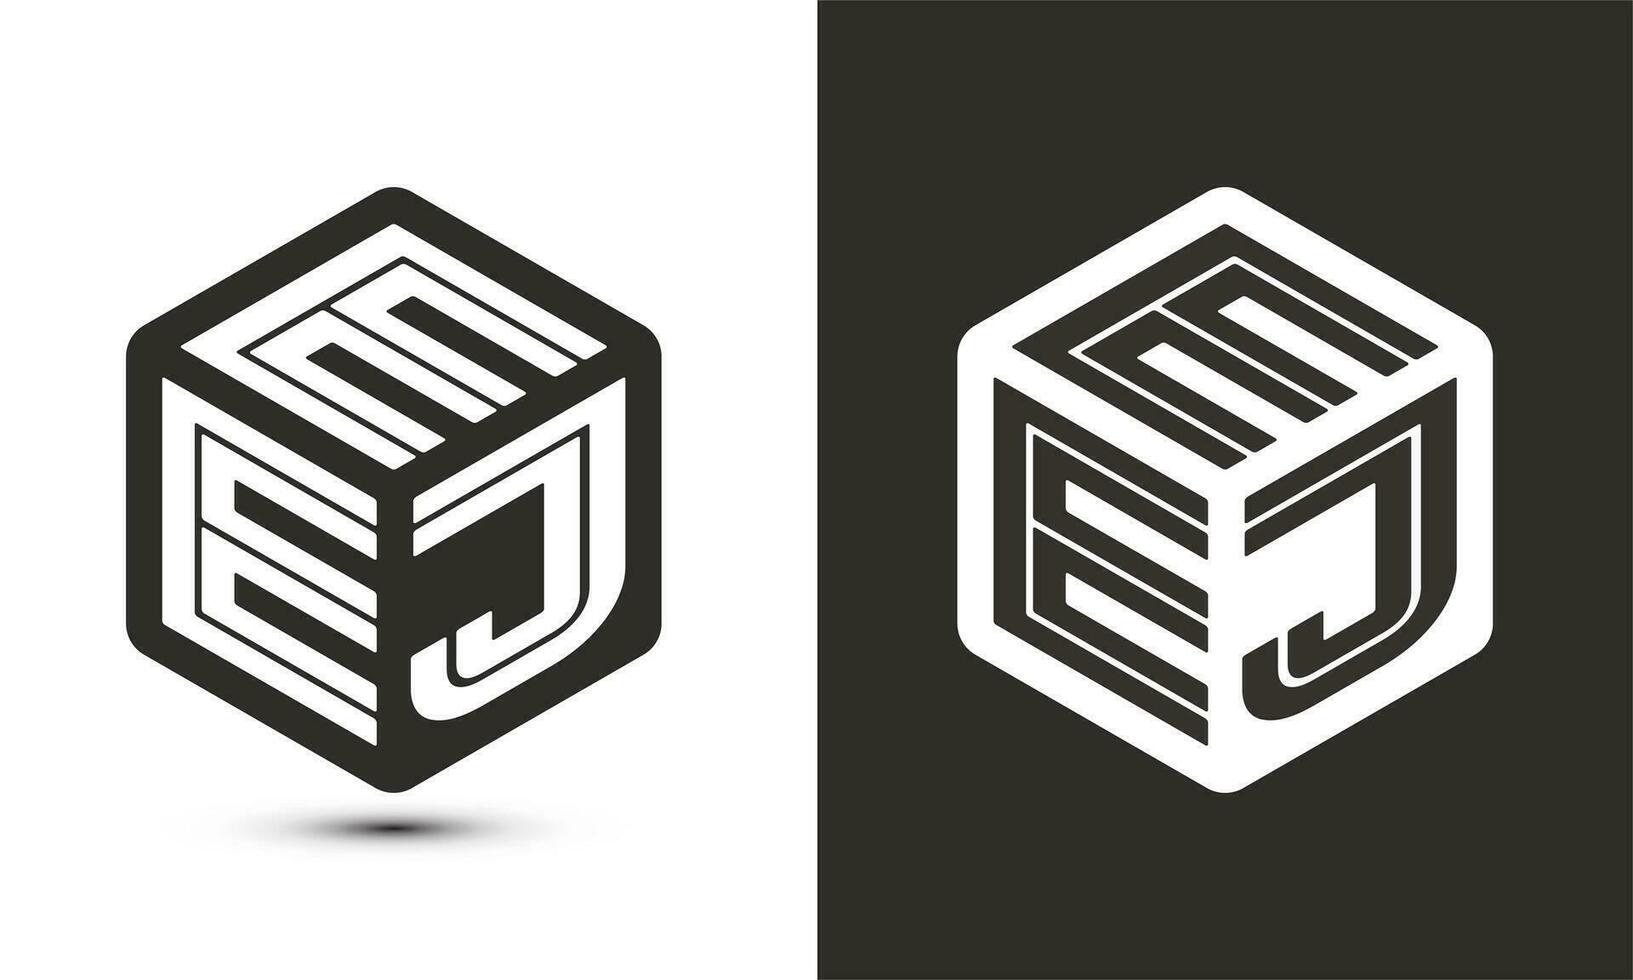 eej brief logo ontwerp met illustrator kubus logo, vector logo modern alfabet doopvont overlappen stijl.